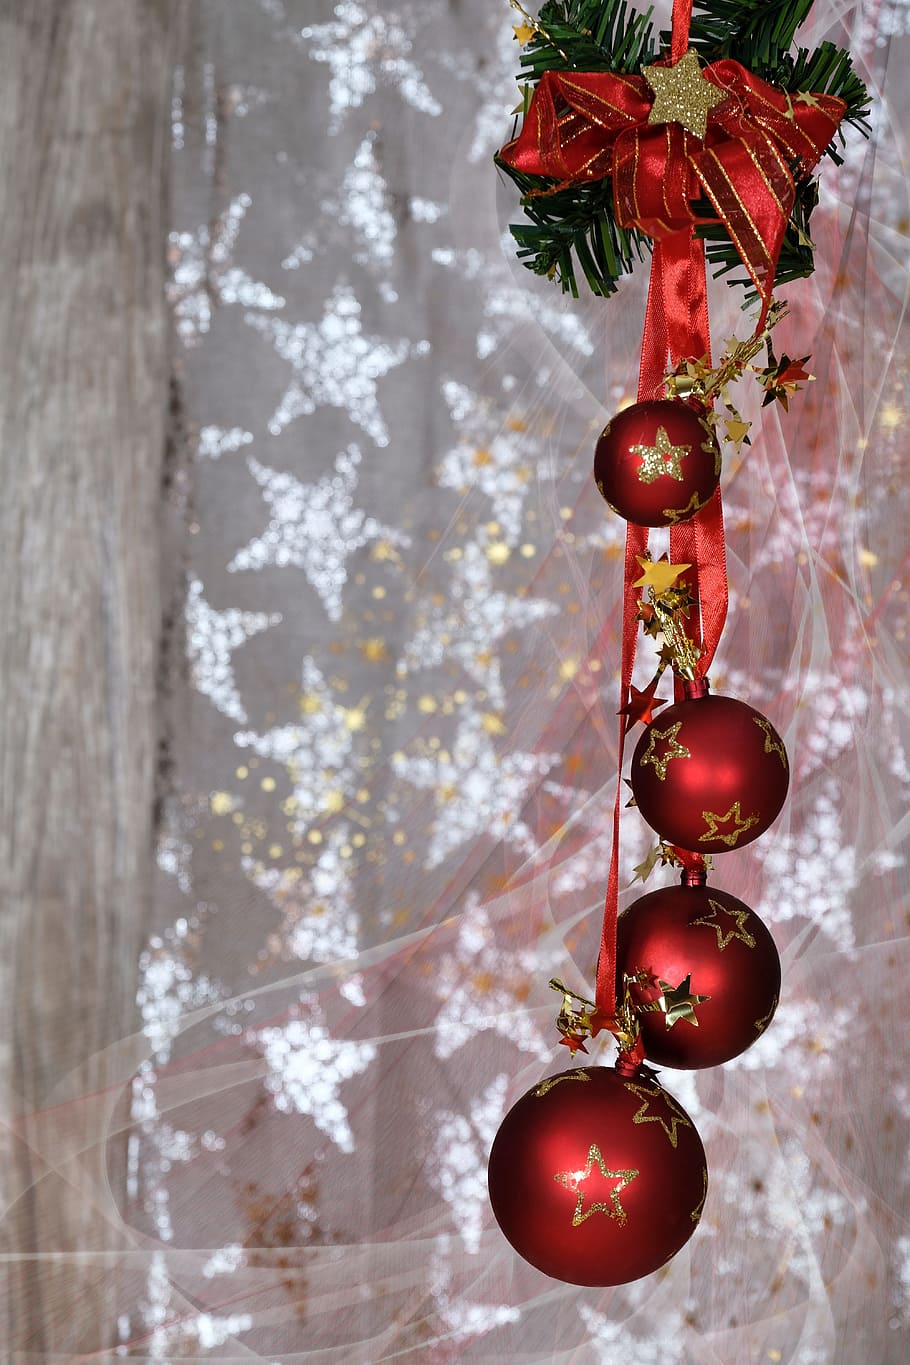 empat, merah, digantung, pernak-pernik, natal, waktu natal, dekorasi natal, kedatangan, kedatangan perhiasan, christbaumkugeln